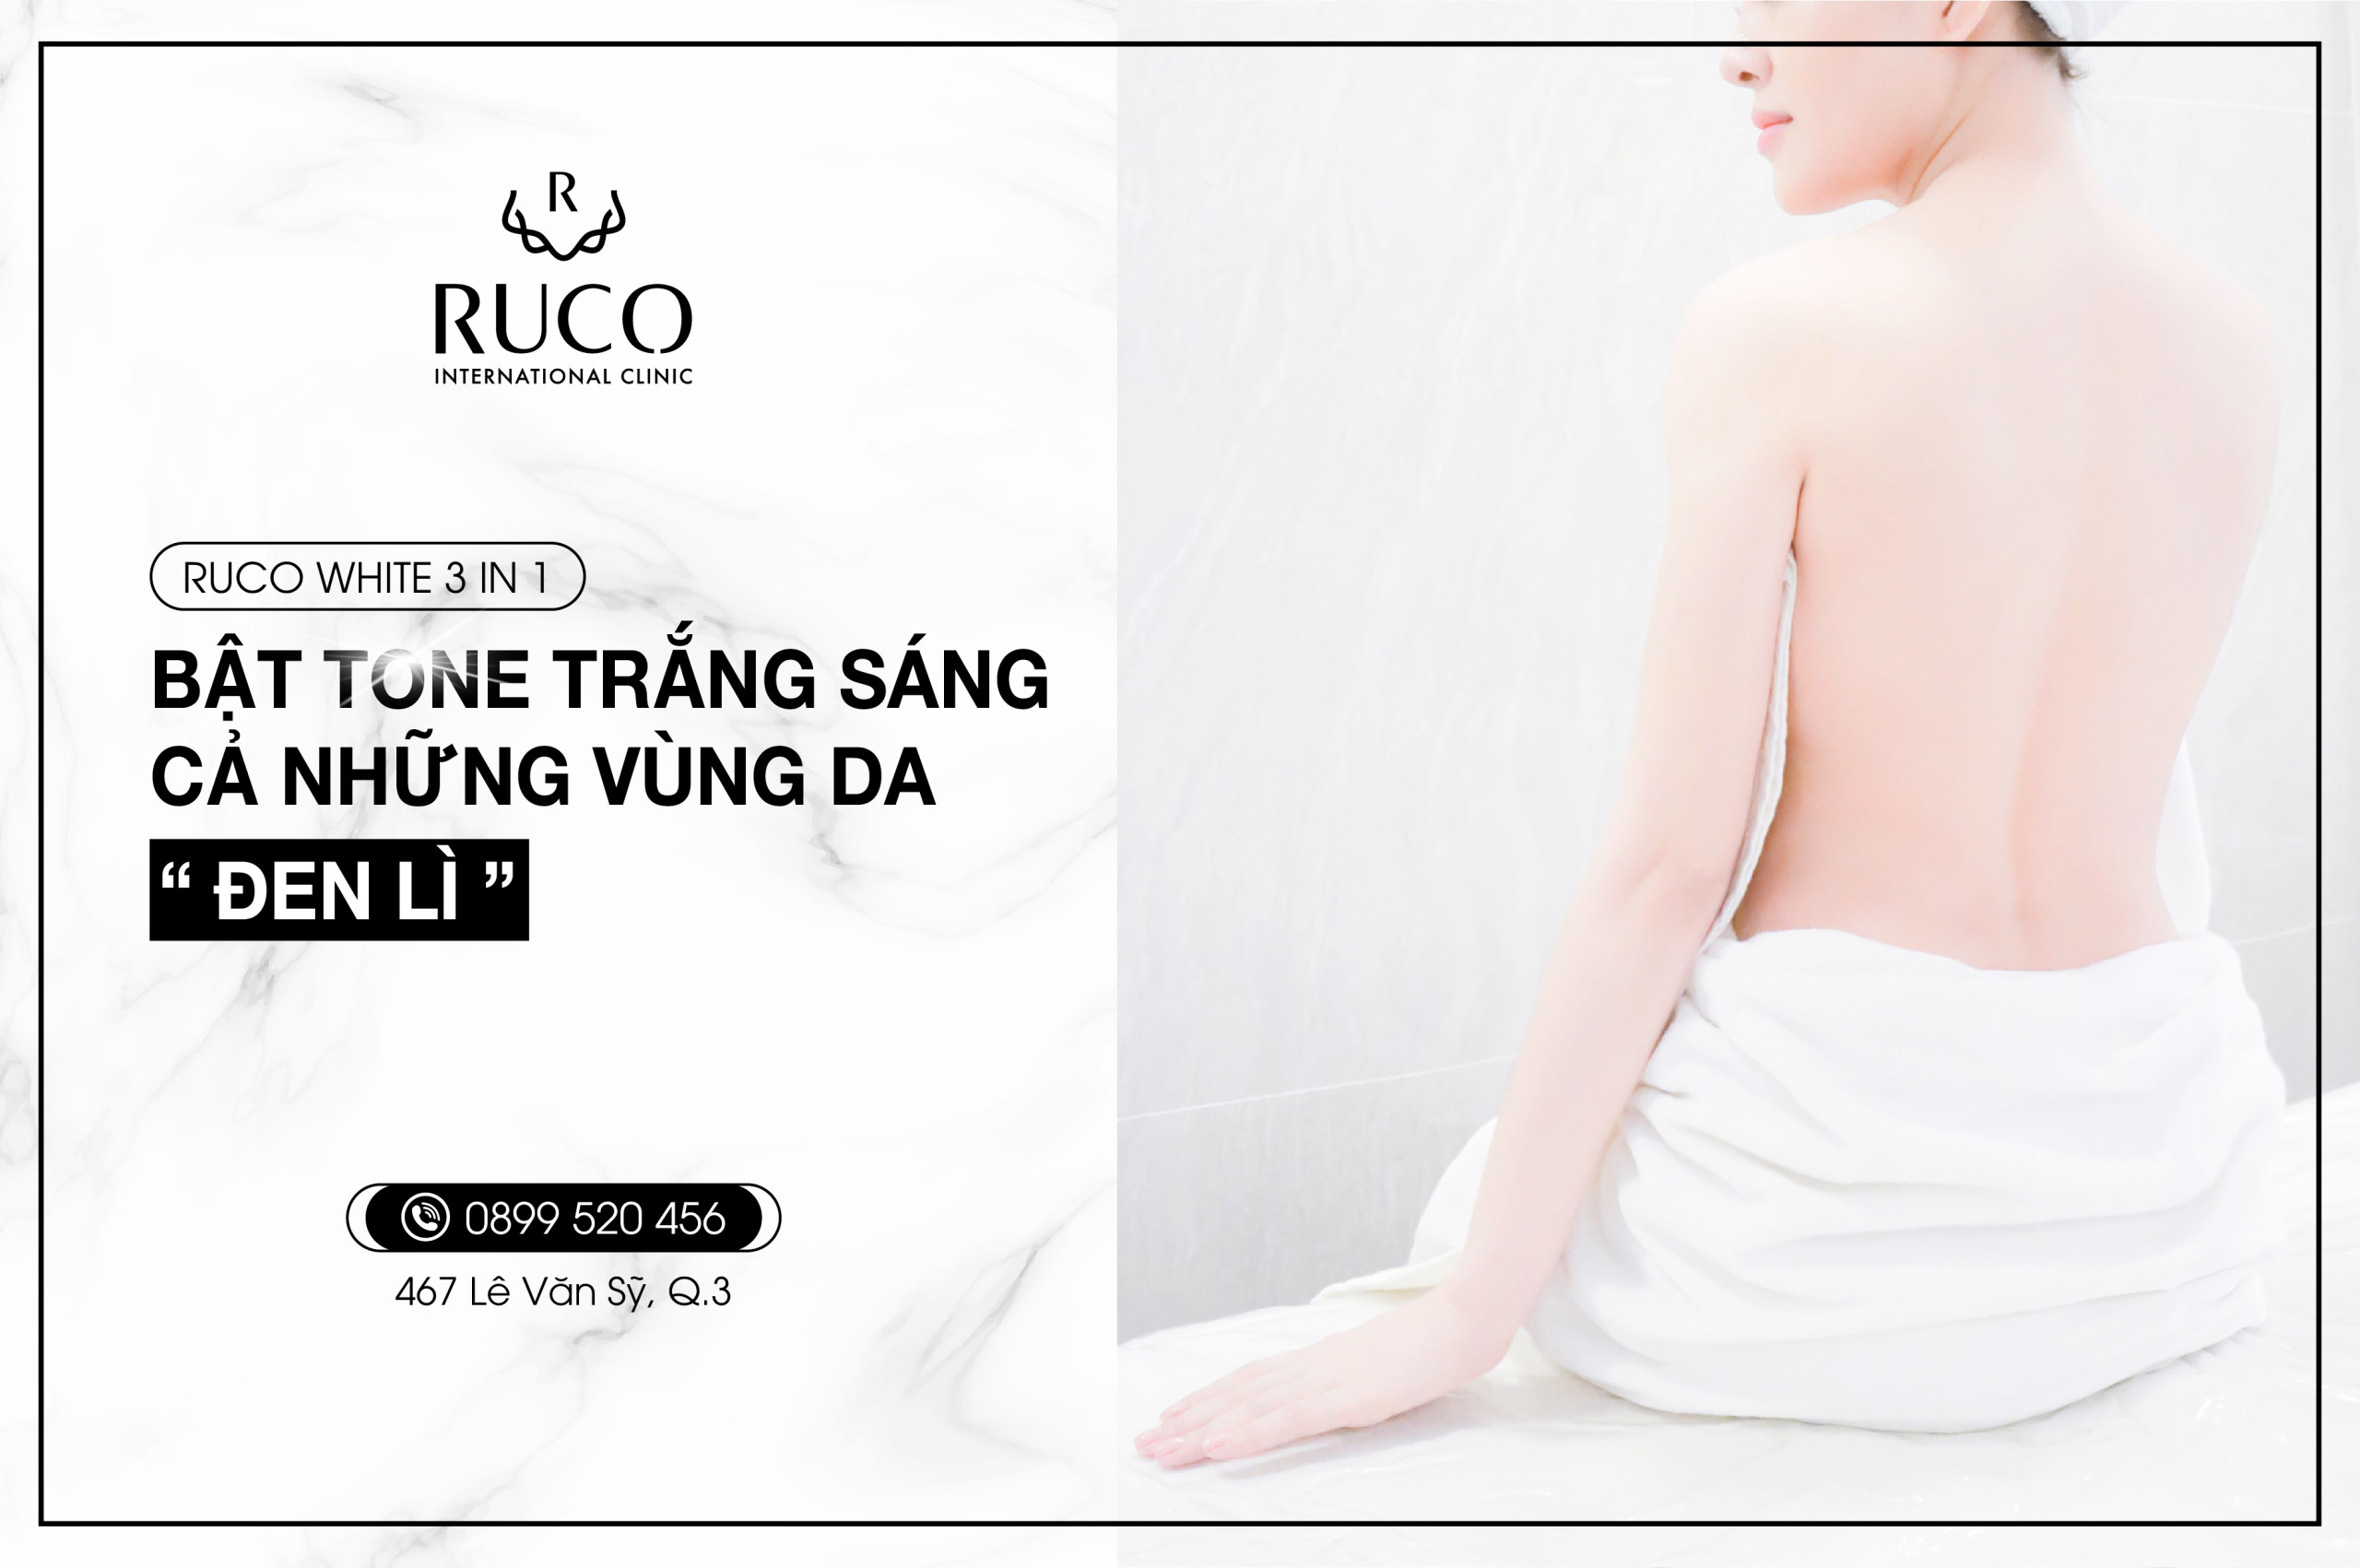 Ruco White 3in1 - Bật tone trắng sáng cả những vùng da 